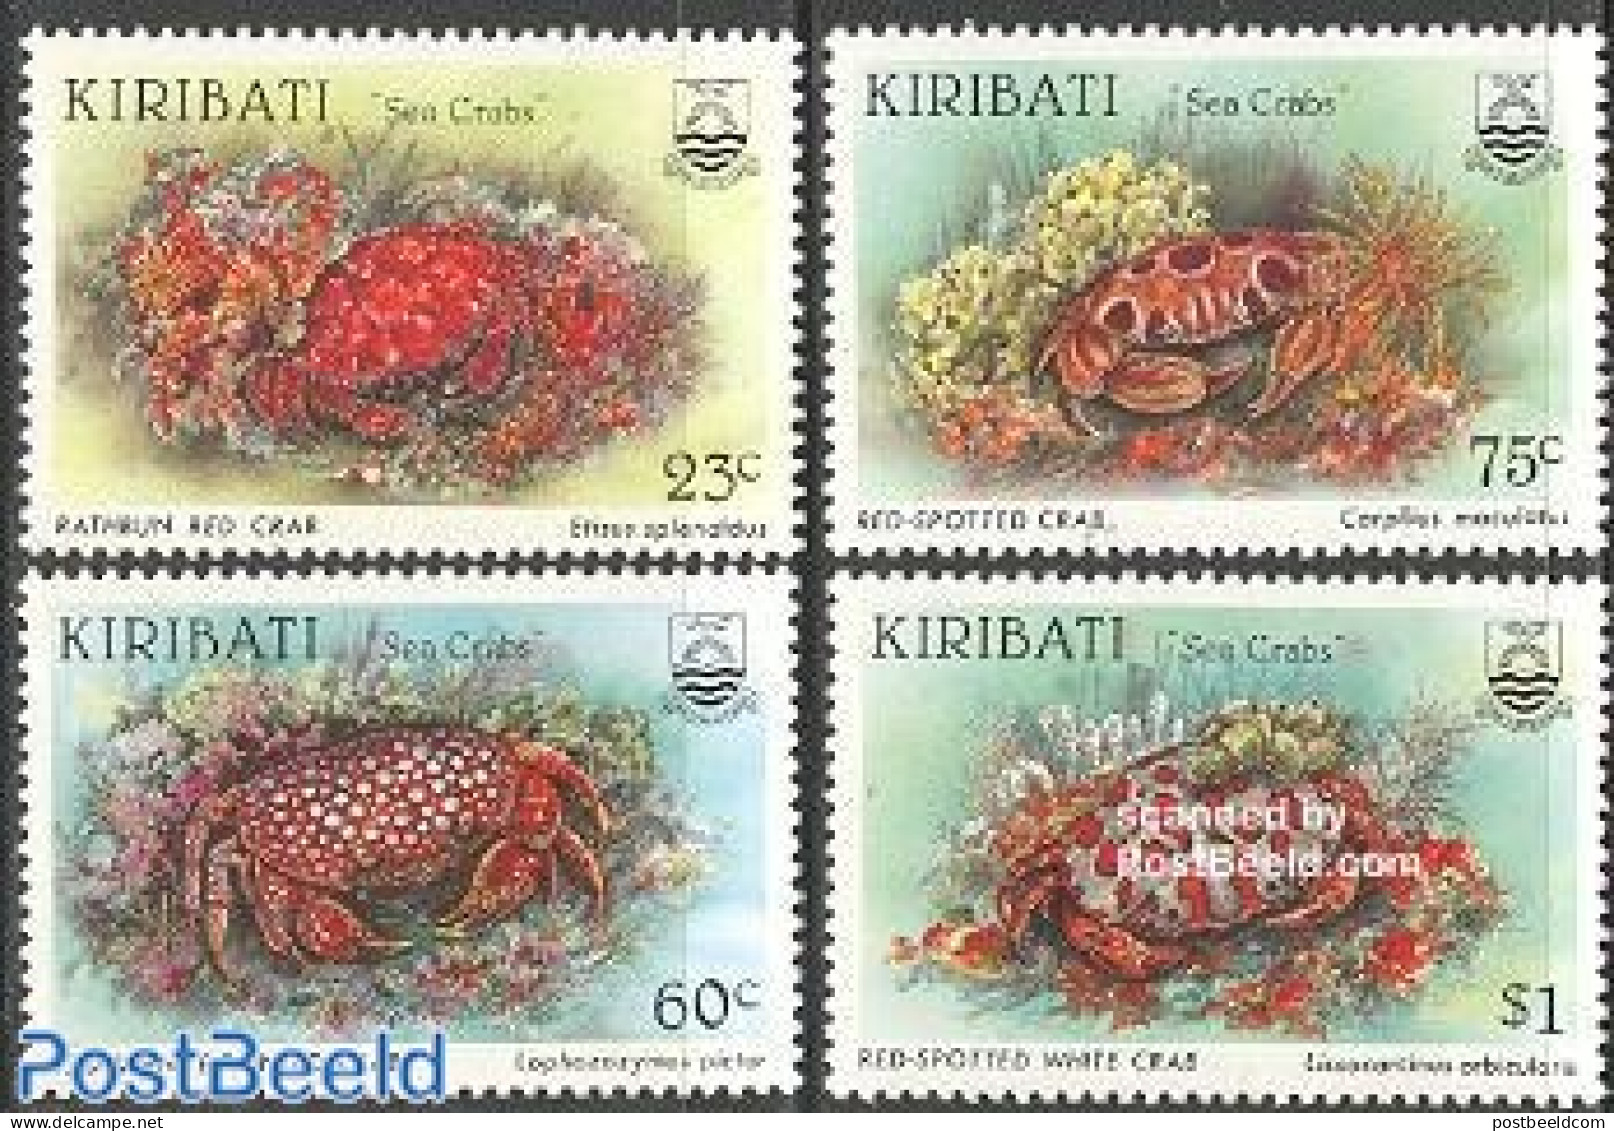 Kiribati 1996 Crabs 4v, Mint NH, Nature - Shells & Crustaceans - Crabs And Lobsters - Marine Life